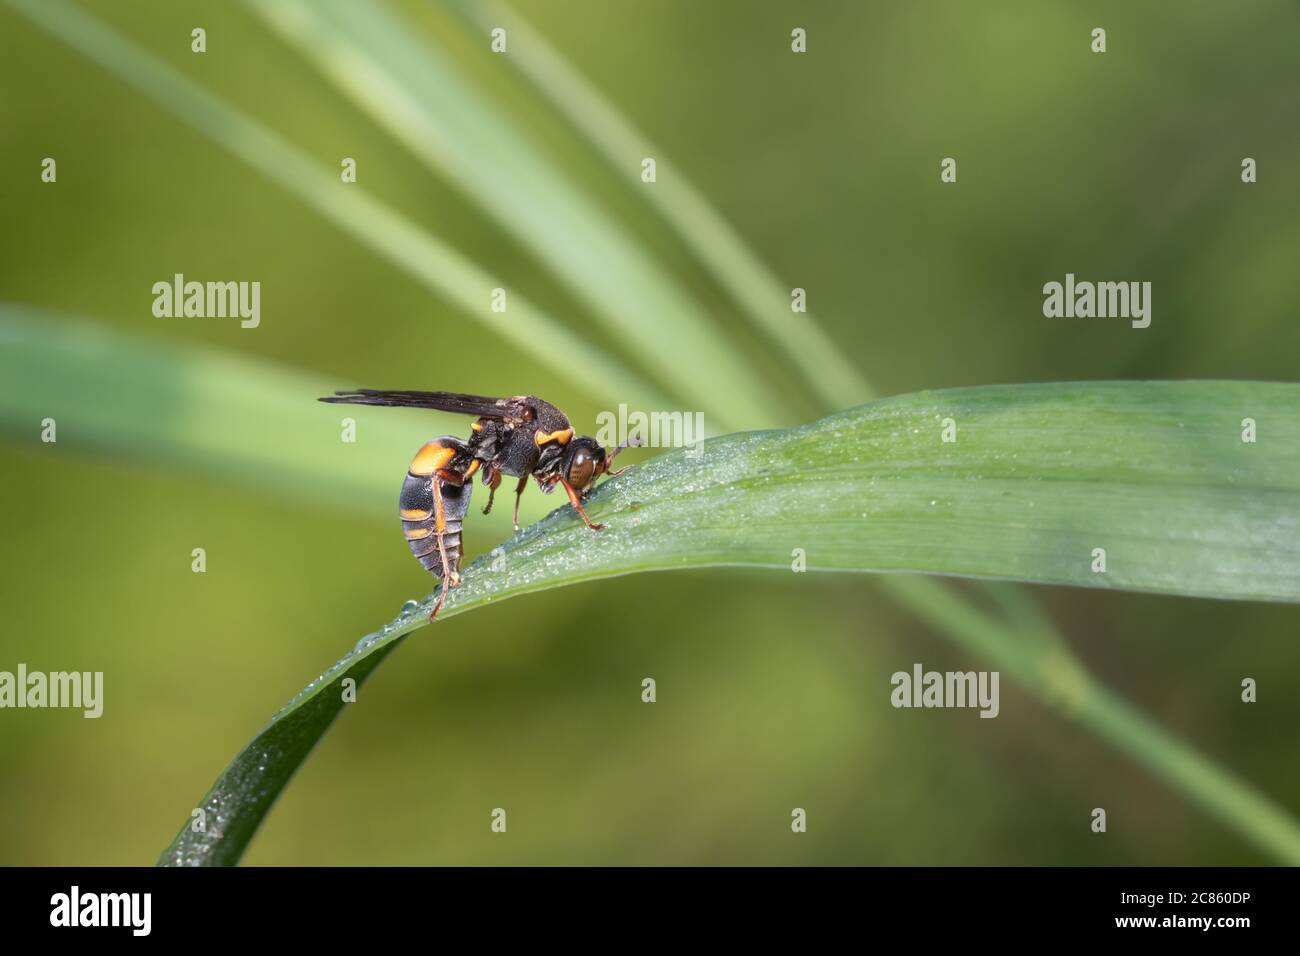 Un vespa Nysson plagiatus (nome comune proposto: Devious Sand Wasp) beve la rugiada mattutina da un'ampia foglia d'erba al Taylor Creek Park a Toronto. Foto Stock